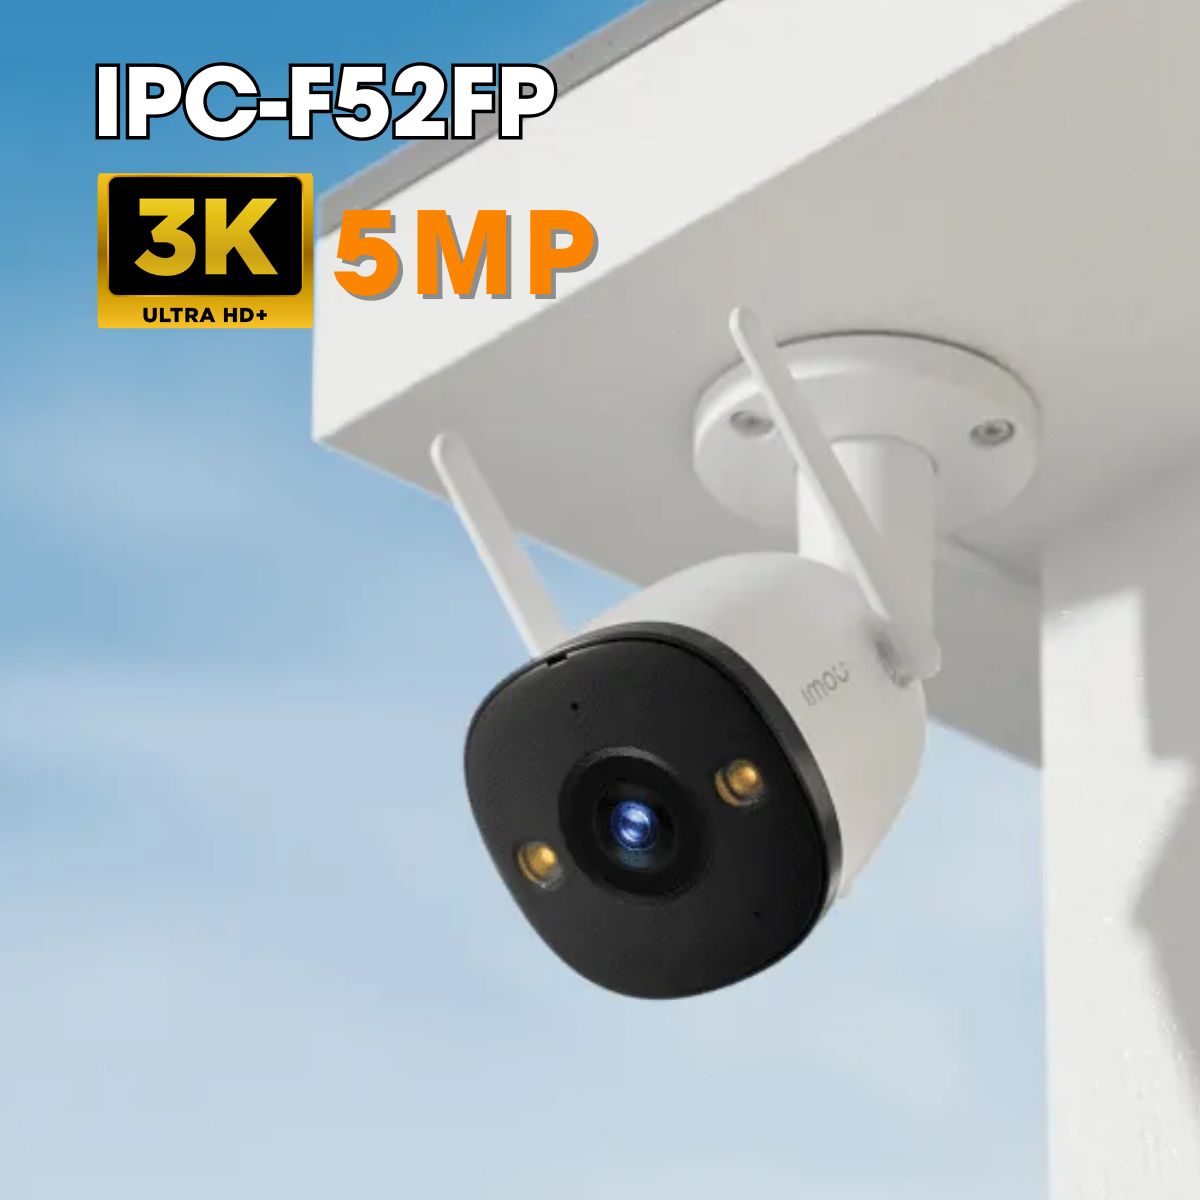 Camera ngoài trời Full Color IMOU IPC-F52FP 3K 5MP phát hiện dạng người, đèn báo, tích hợp mic, IP67, hồng ngoại 30m